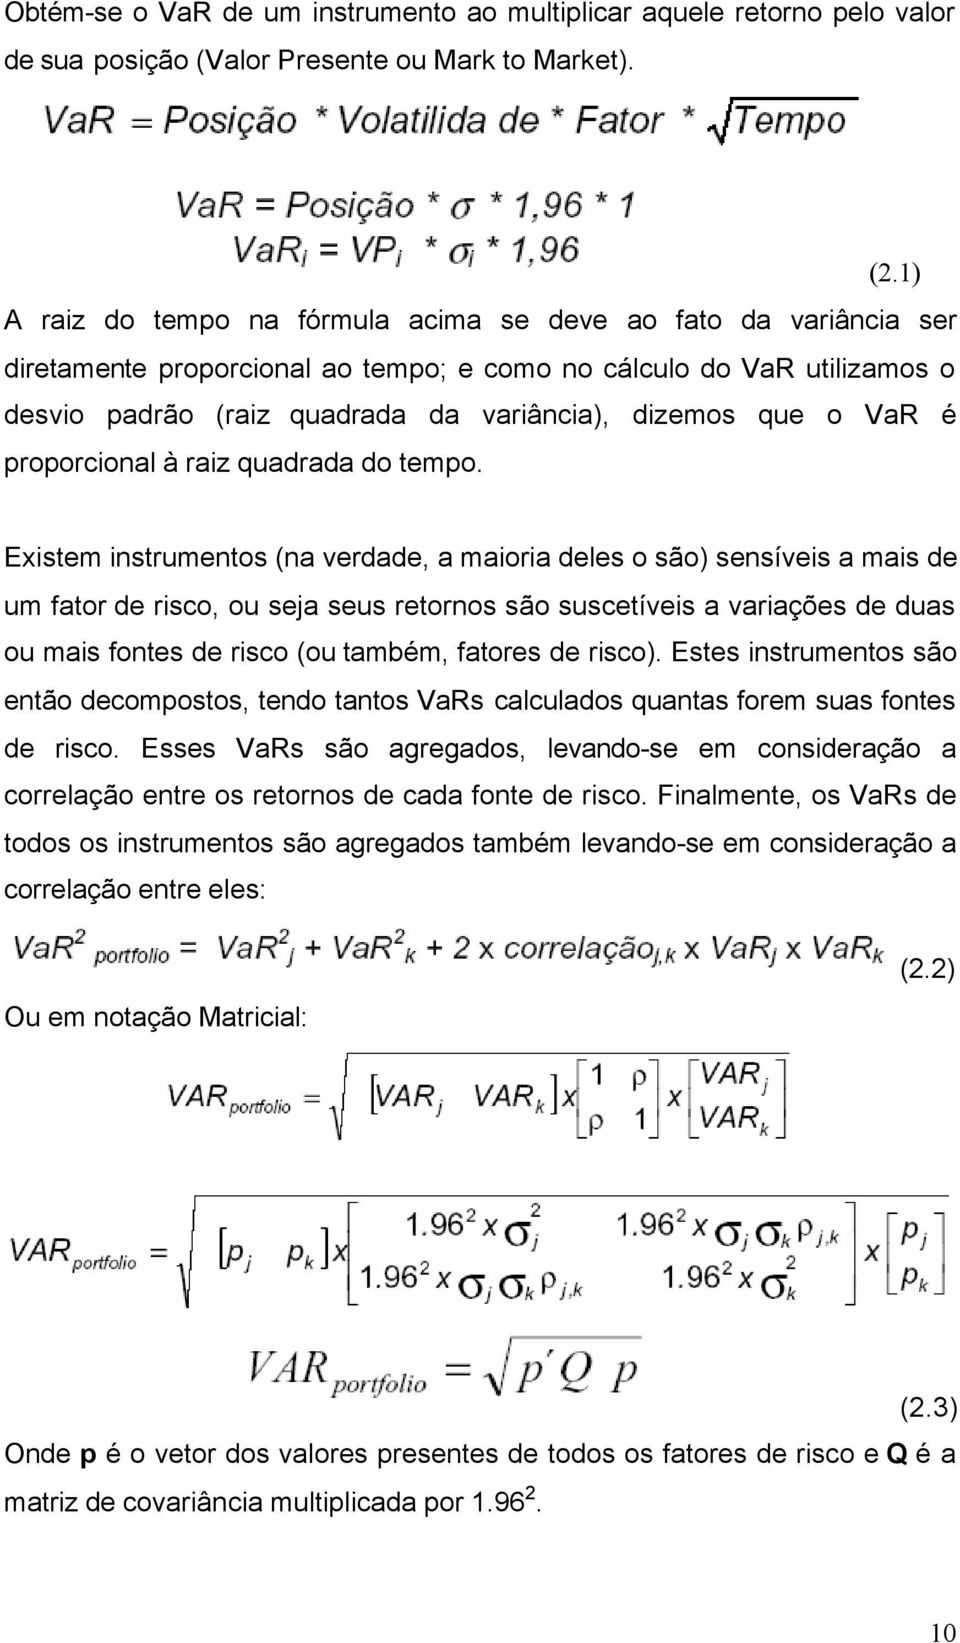 1) A raiz do tempo na fórmula acima se deve ao fato da variância ser diretamente proporcional ao tempo; e como no cálculo do VaR utilizamos o desvio padrão (raiz quadrada da variância), dizemos que o